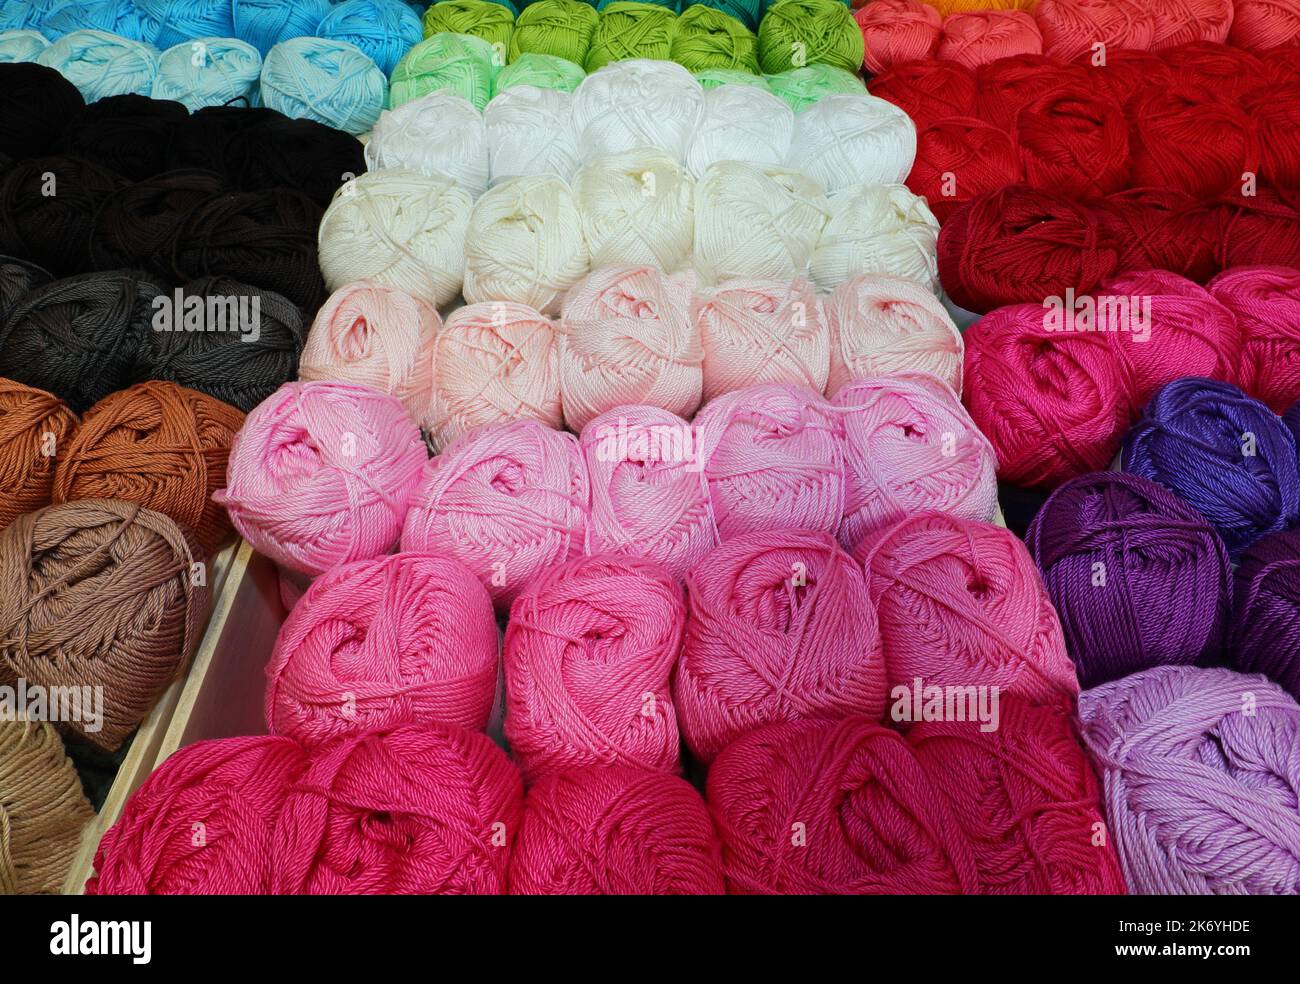 Balles de laine ou de coton en vente dans la boutique Banque D'Images